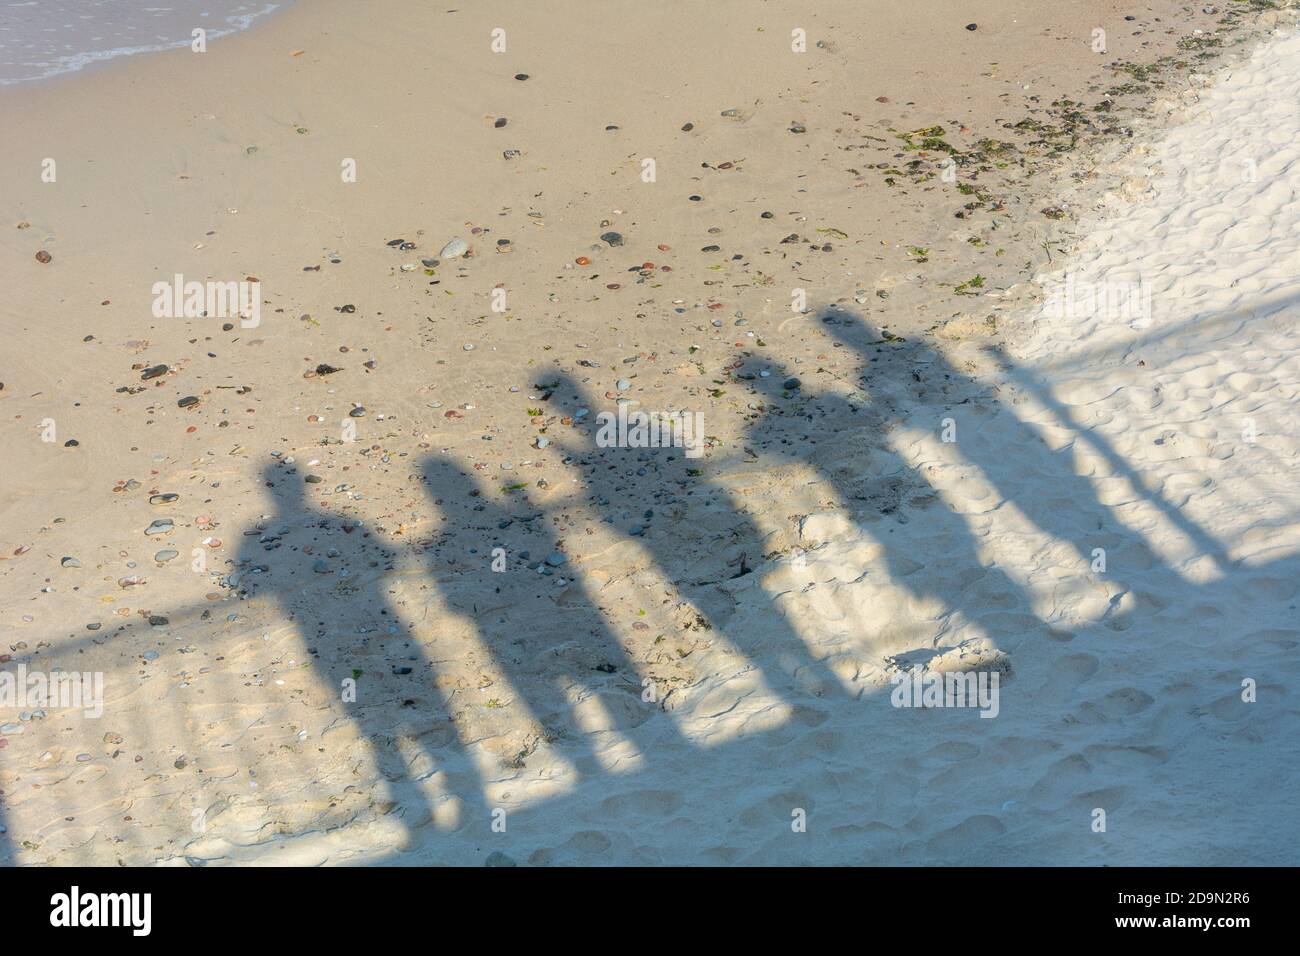 Schatten von Menschen auf Sand in der Nähe des Meeres. Konzept der Erinnerung, Abschied von Angehörigen, Abschied von einer anderen Realität, Tod. Stockfoto